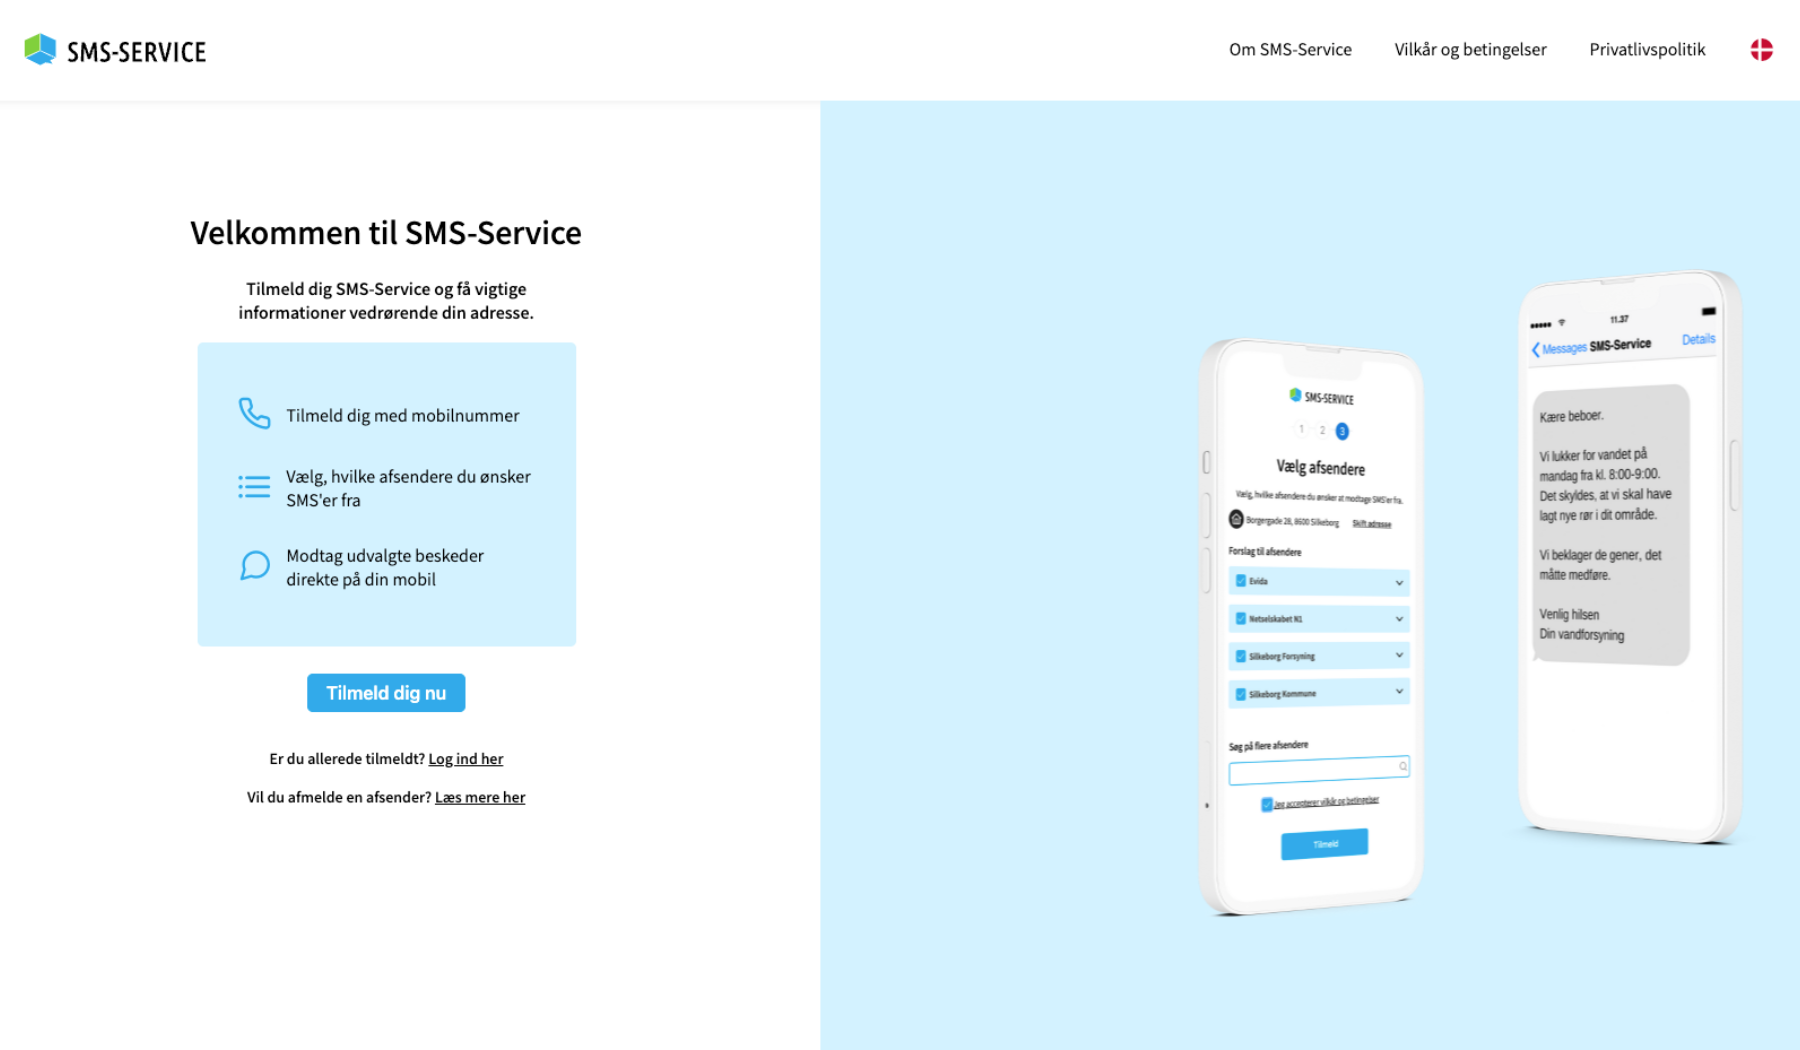 Fælles tilmeldingsapplikation www.sms-service.dk